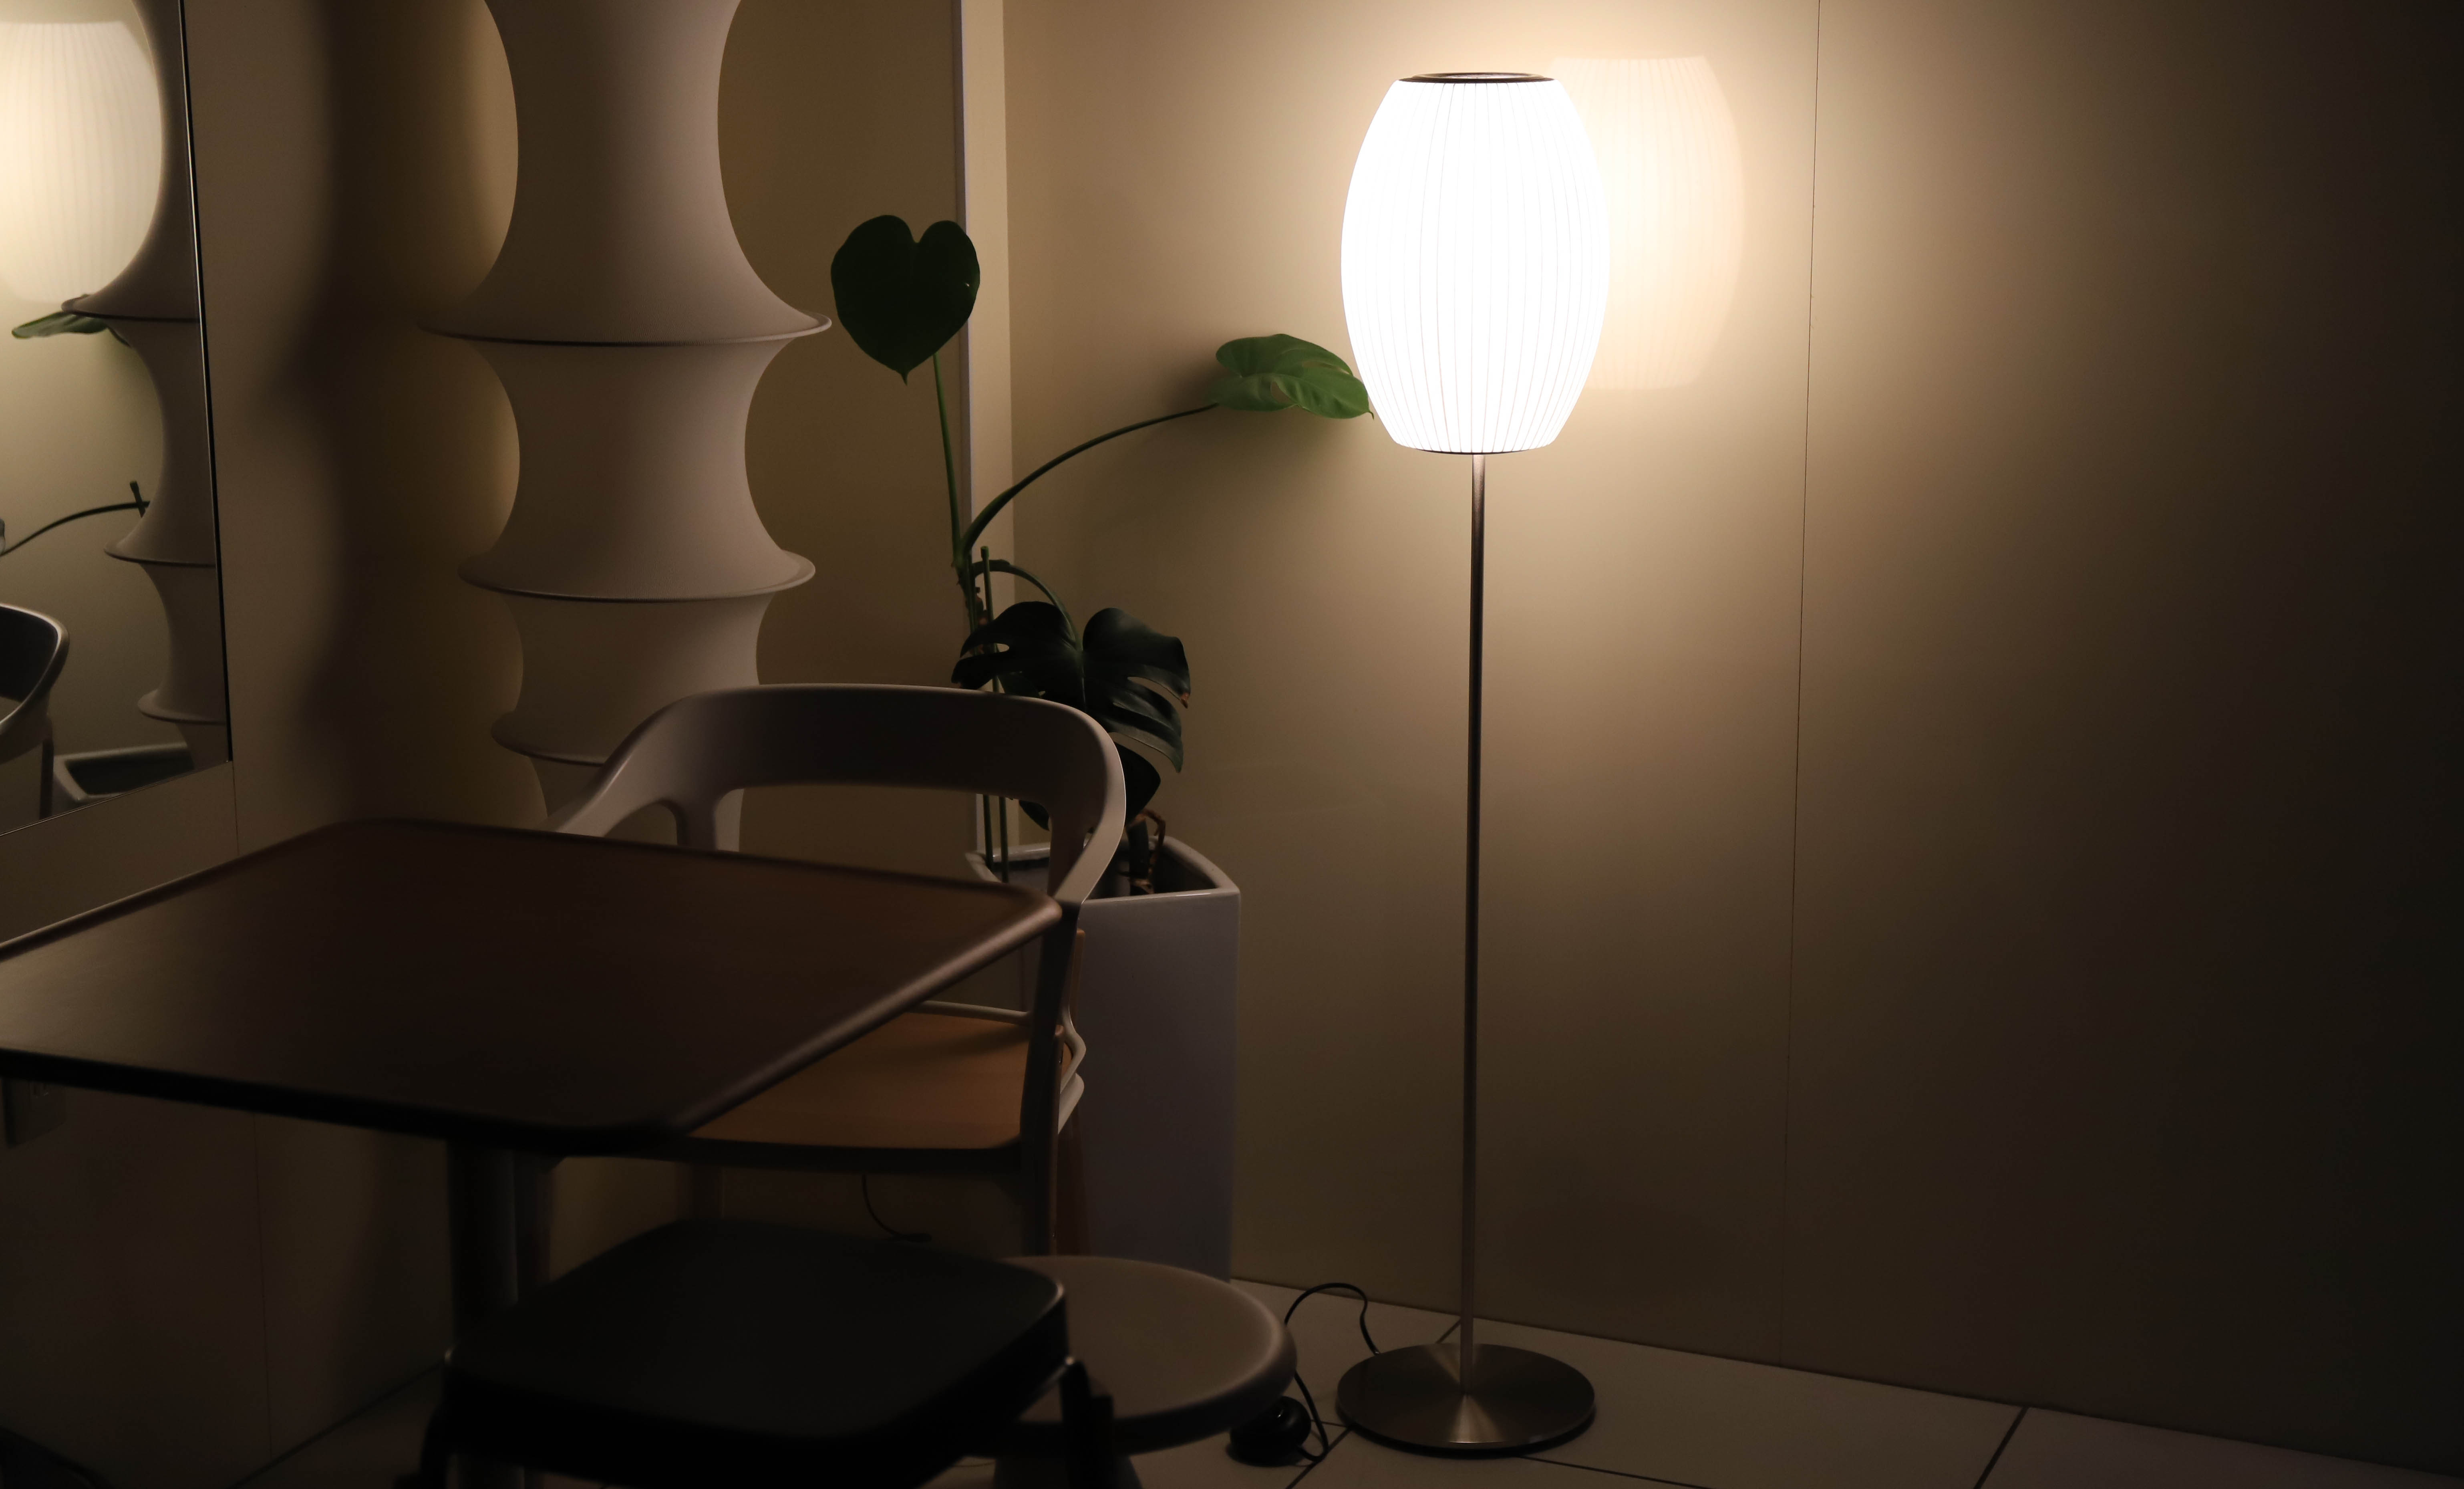 ネルソンの名作照明バブルランプをフロアライト/テーブルライトにしたロータスシリーズとは | 名作家具とデザインの話